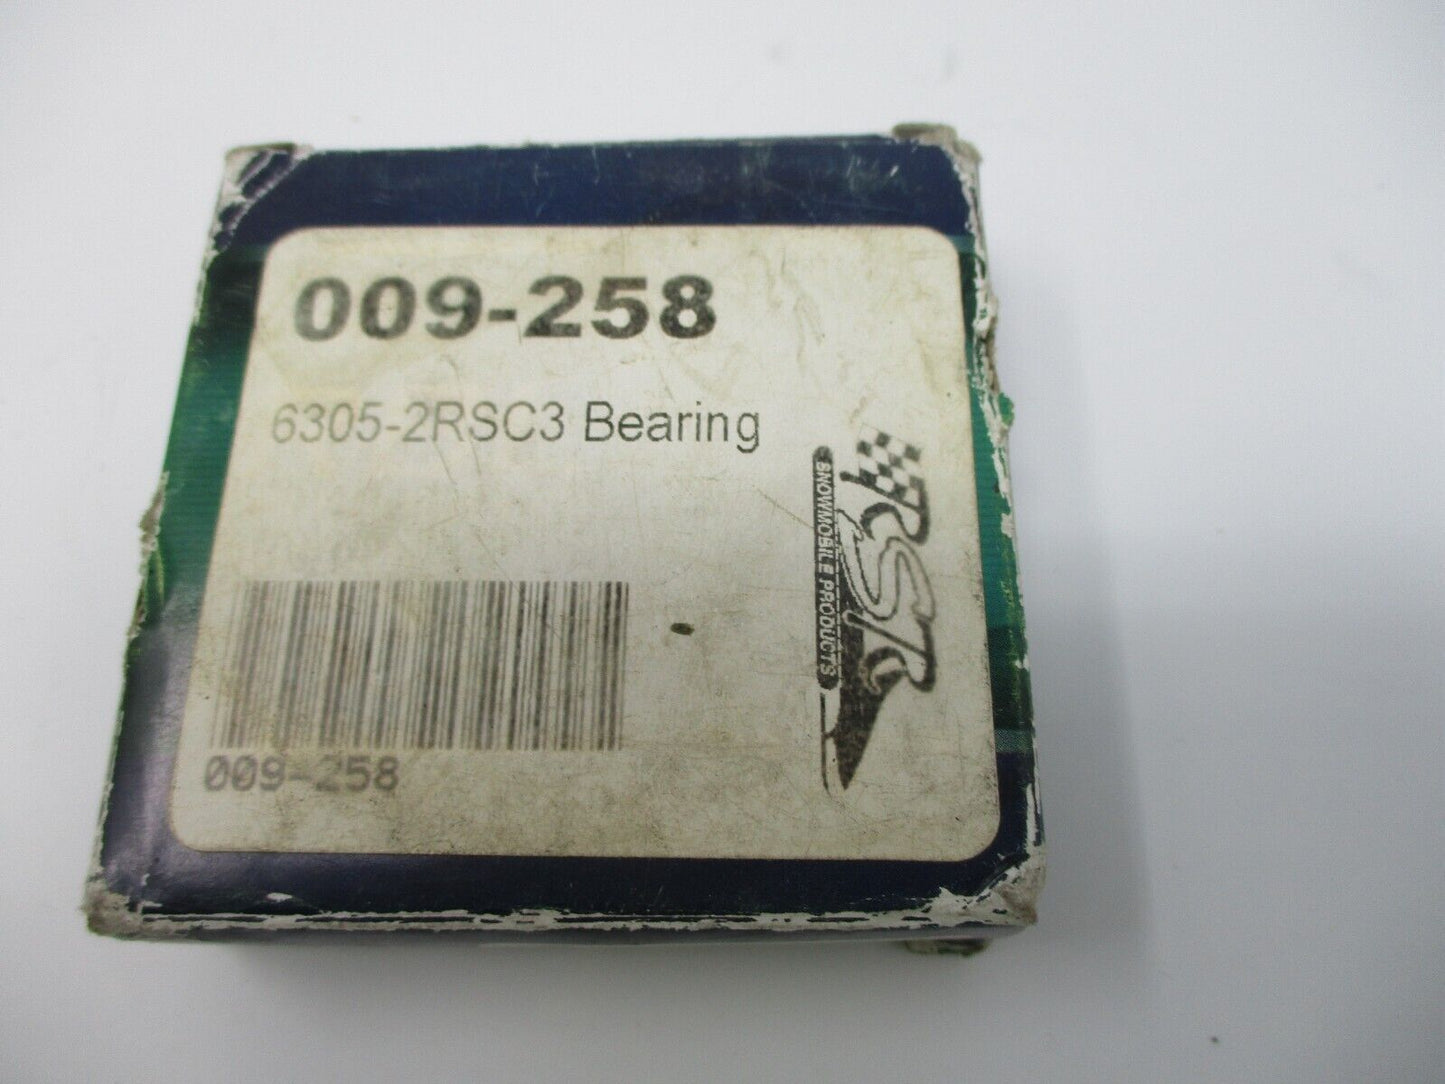 RBL Bearing 6305-2RSC3